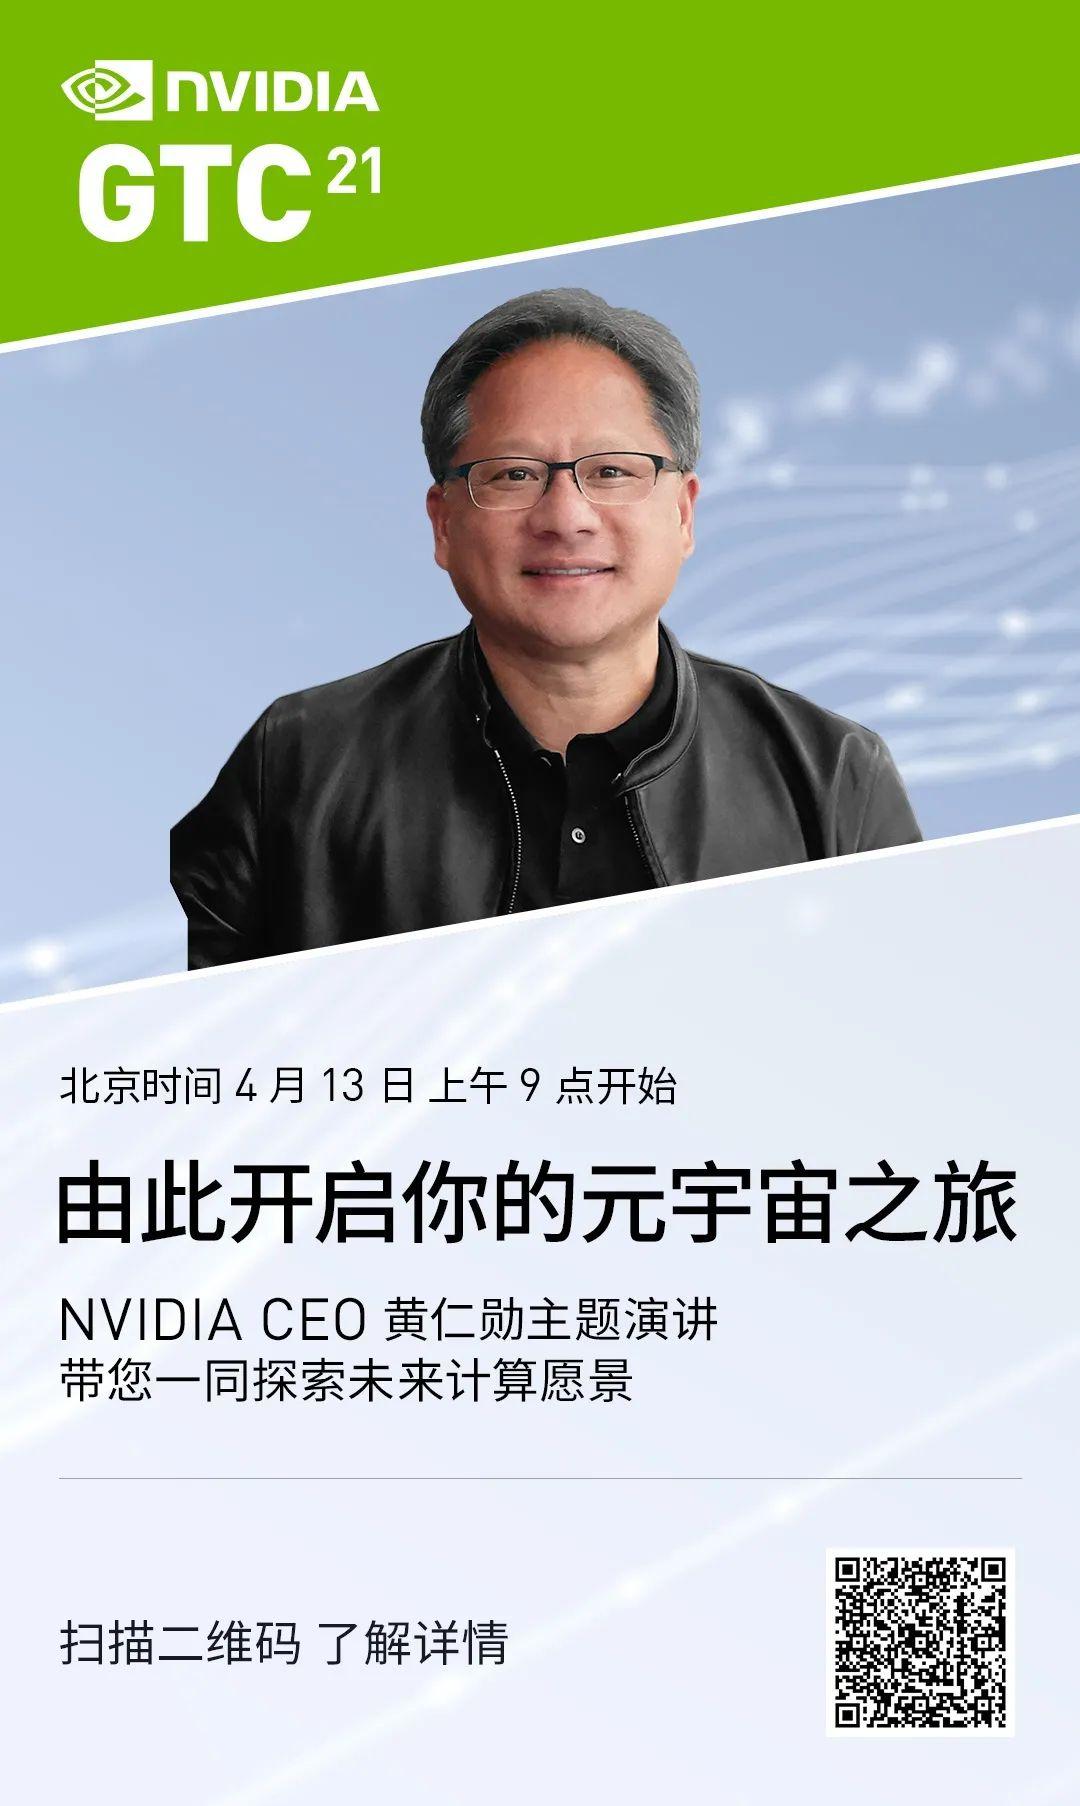 扫描下方海报二维码,在 gtc21 聆听 nvidia 创始人兼首席执行官黄仁勋